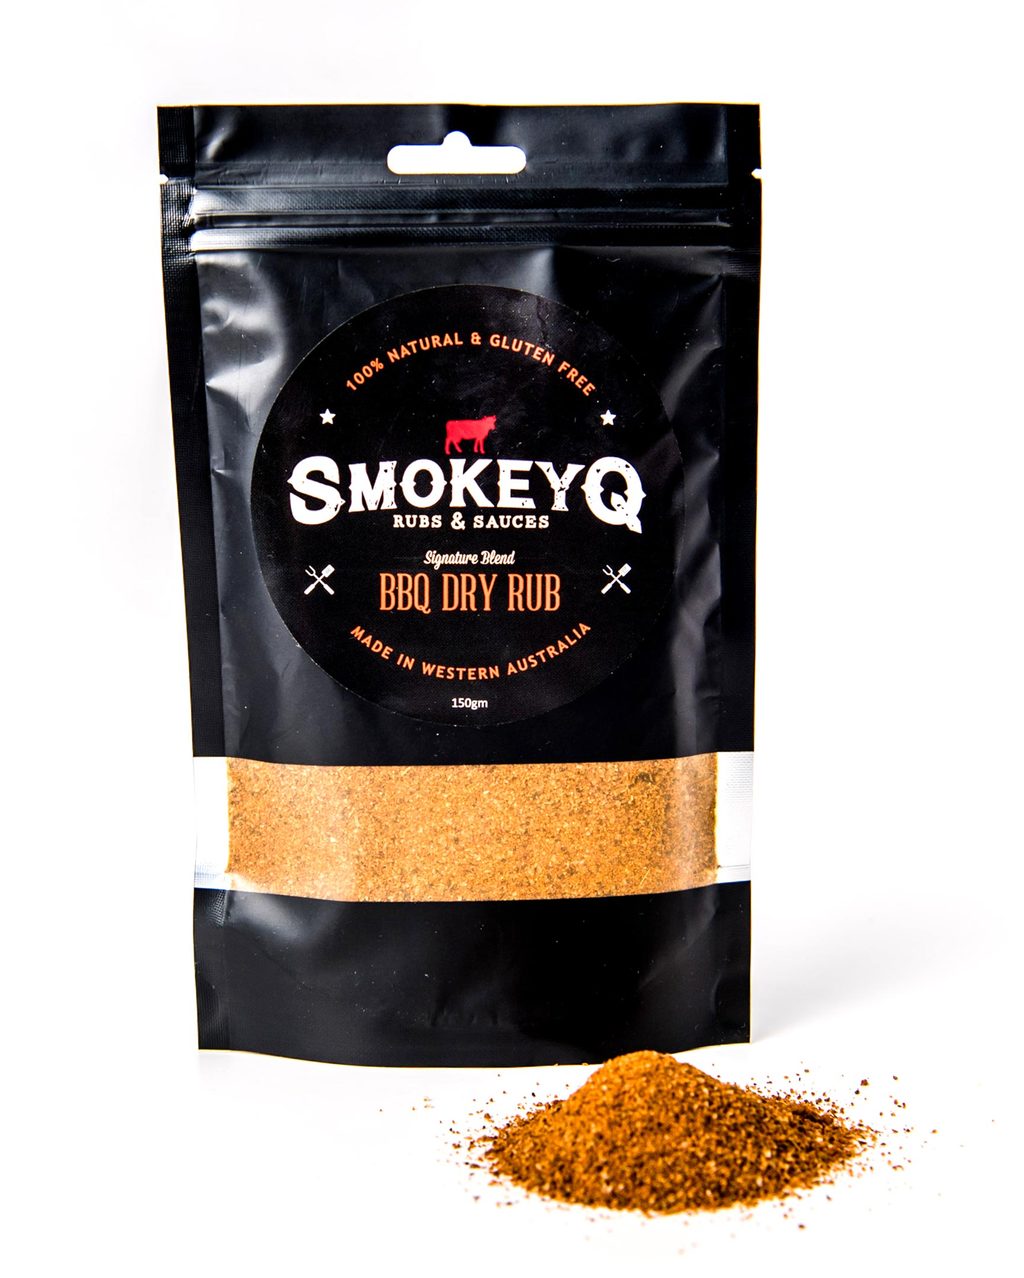 Smokey Q BBQ Dry Rub,150g